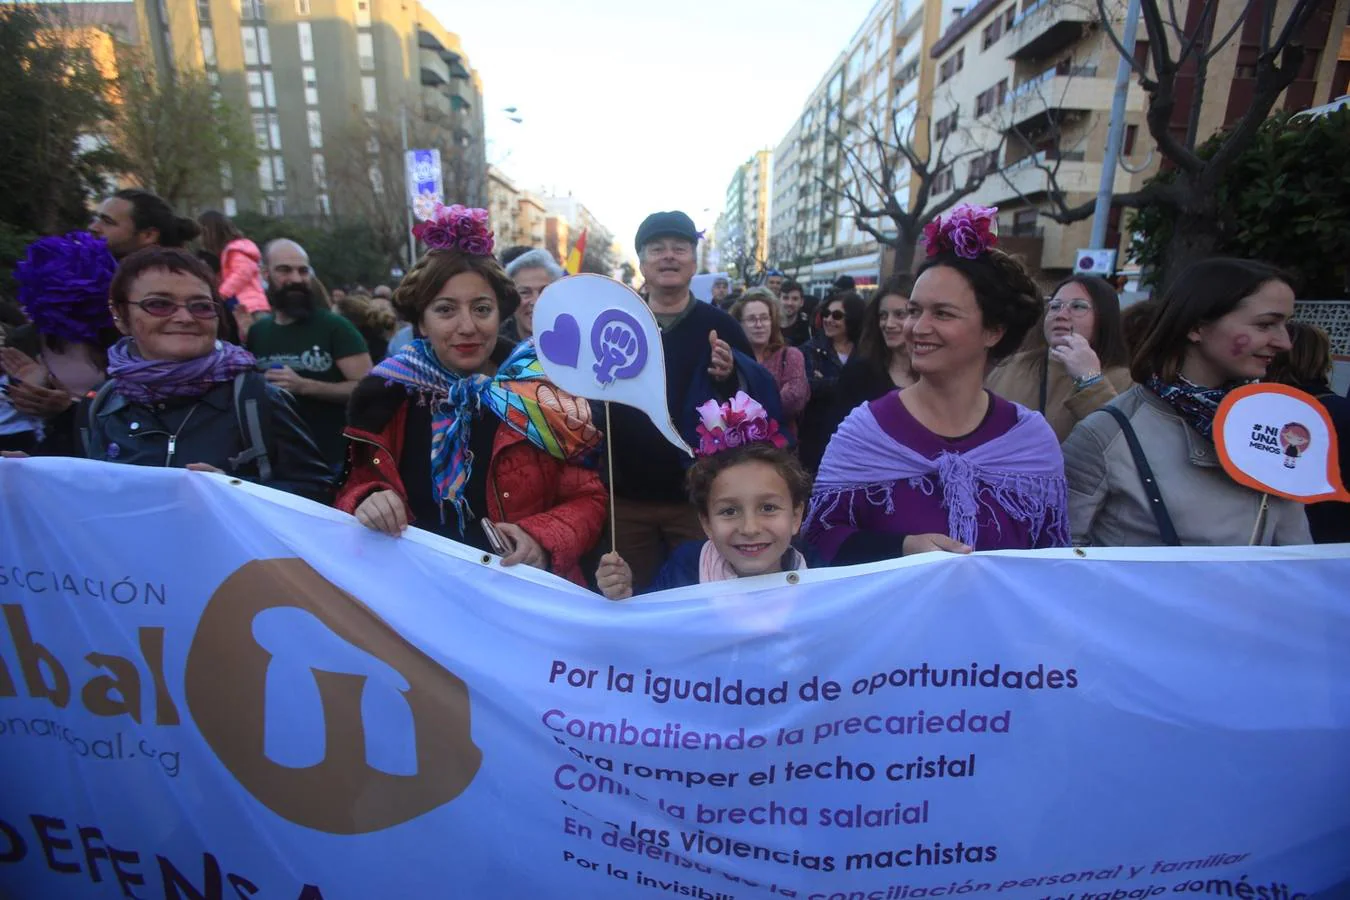 FOTOS: Las imágenes de la marcha del 8-M por Cádiz